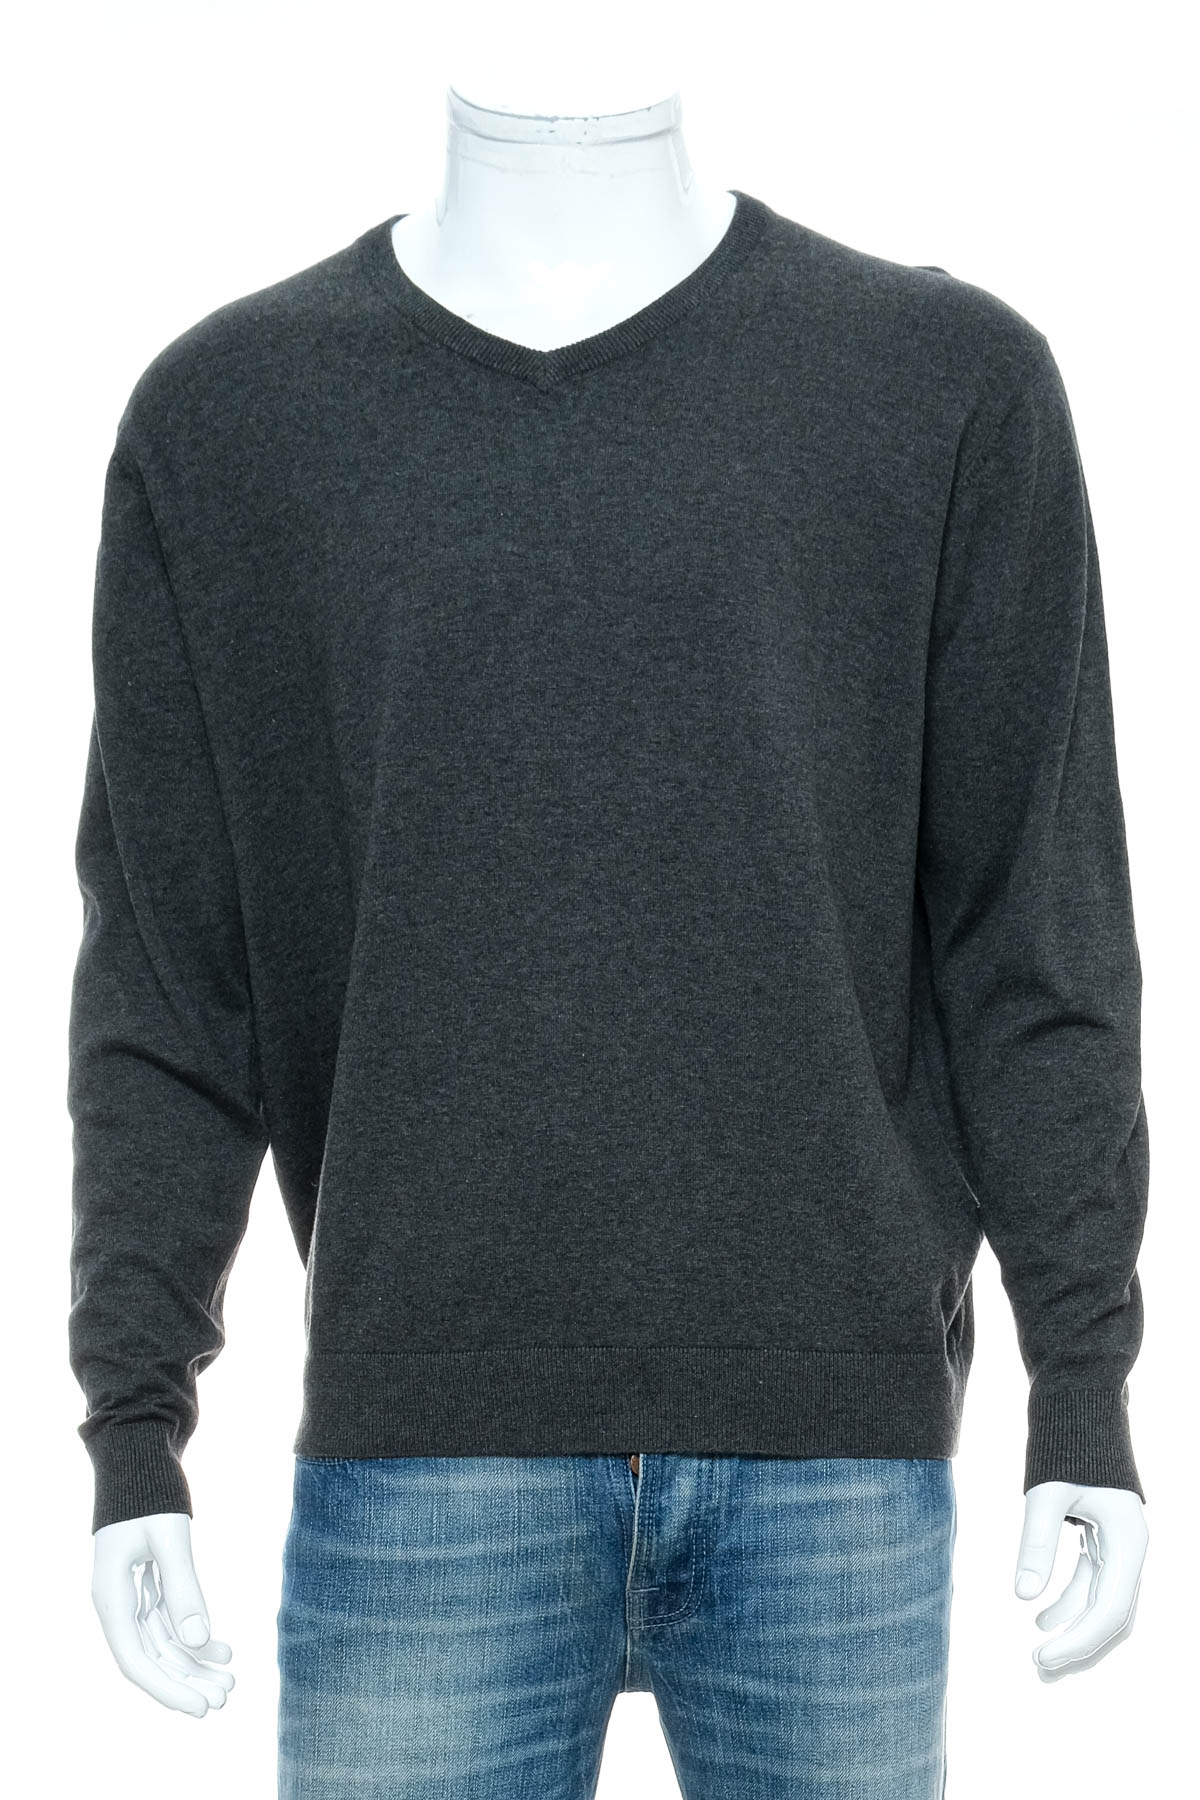 Men's sweater - Nils Sundstrom - 0